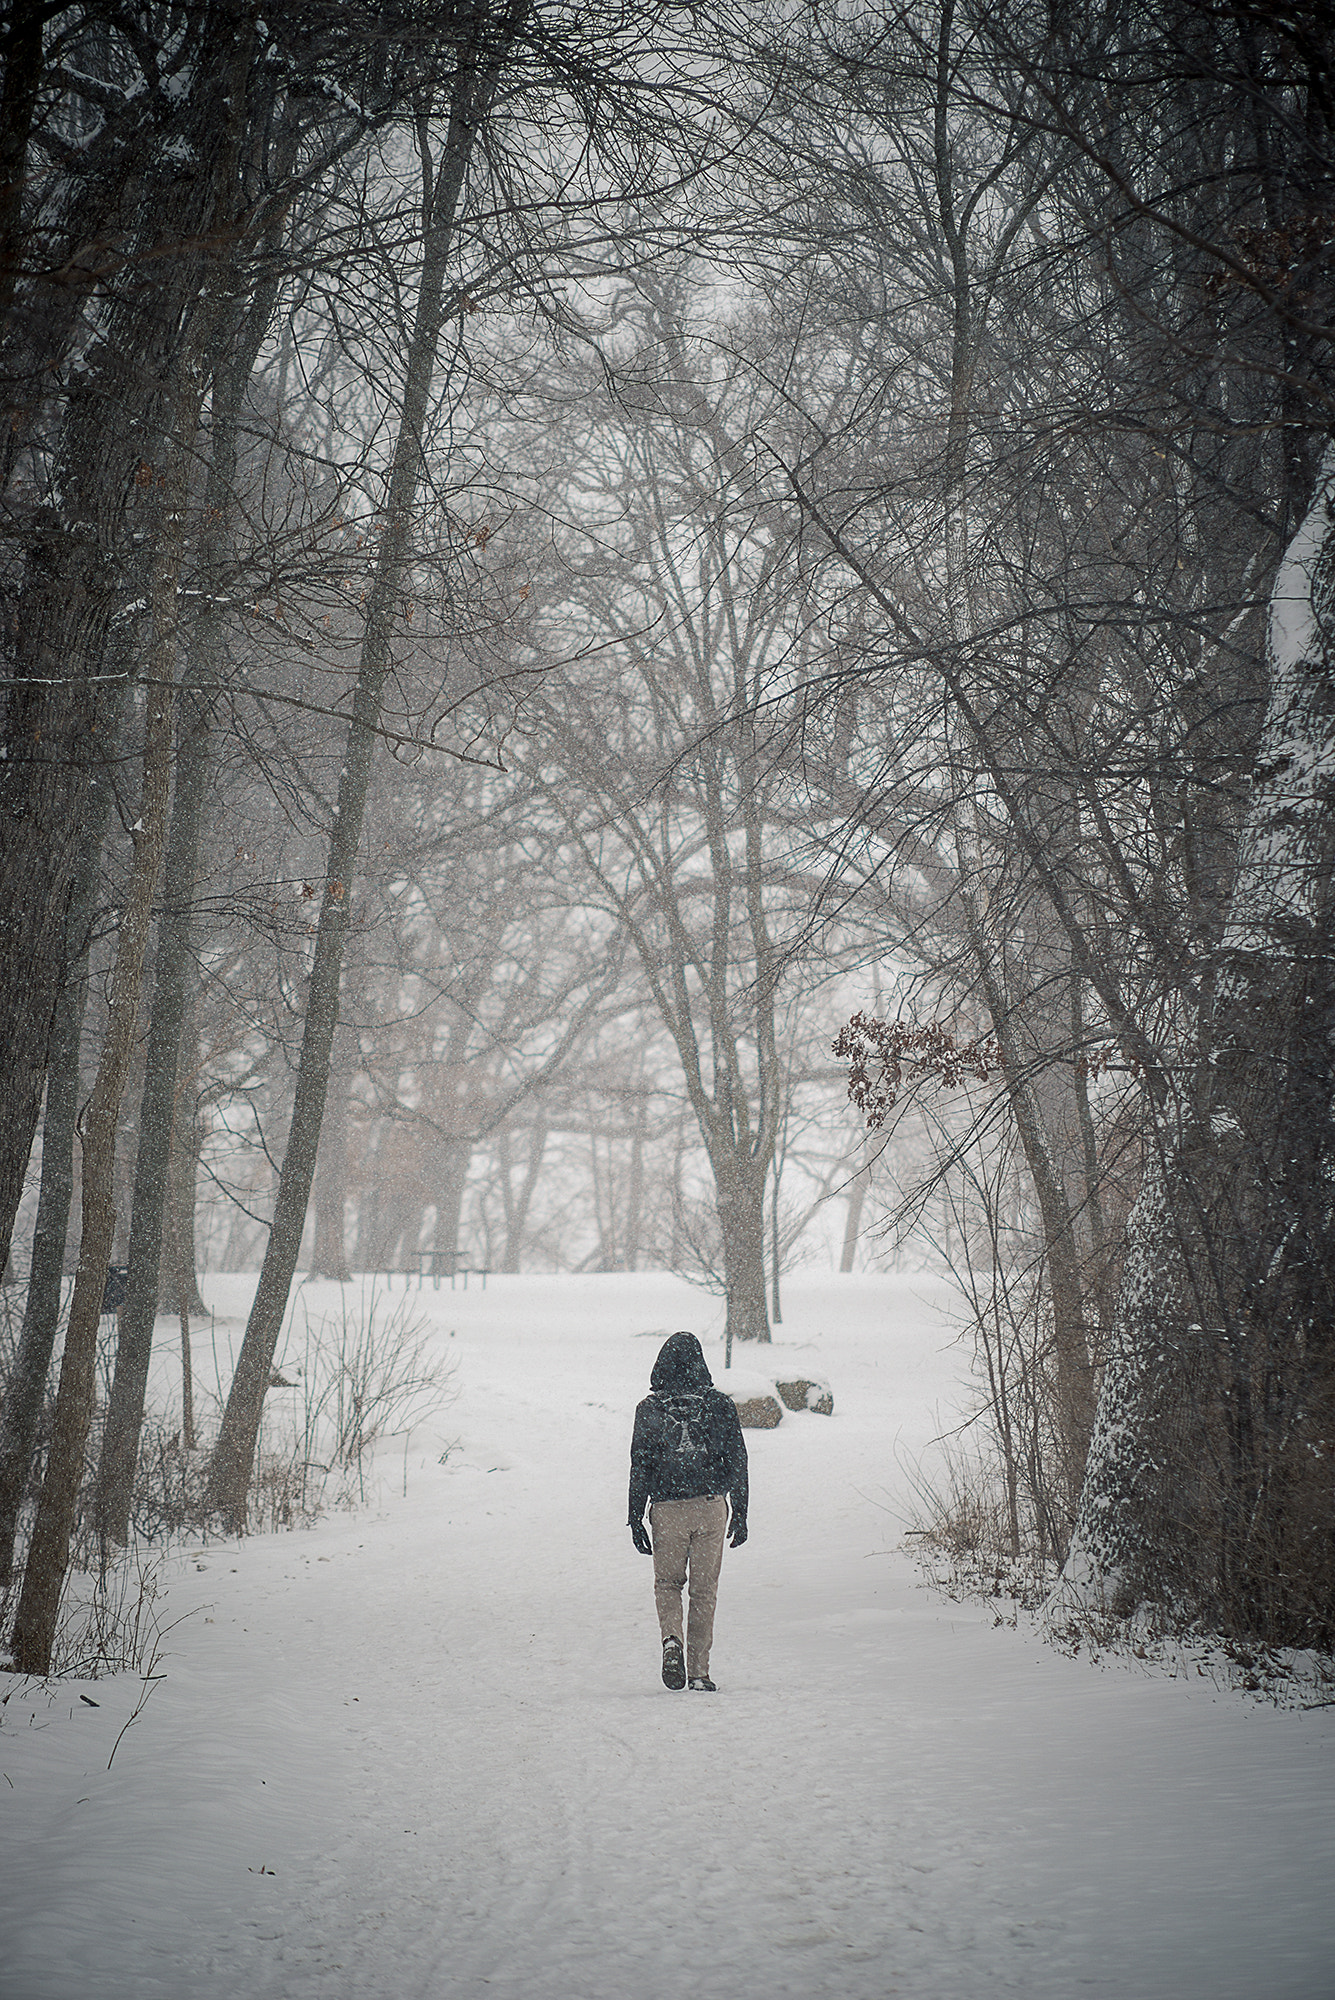 Nikon D610 + AF Nikkor 70-210mm f/4-5.6D sample photo. Walking into snow photography